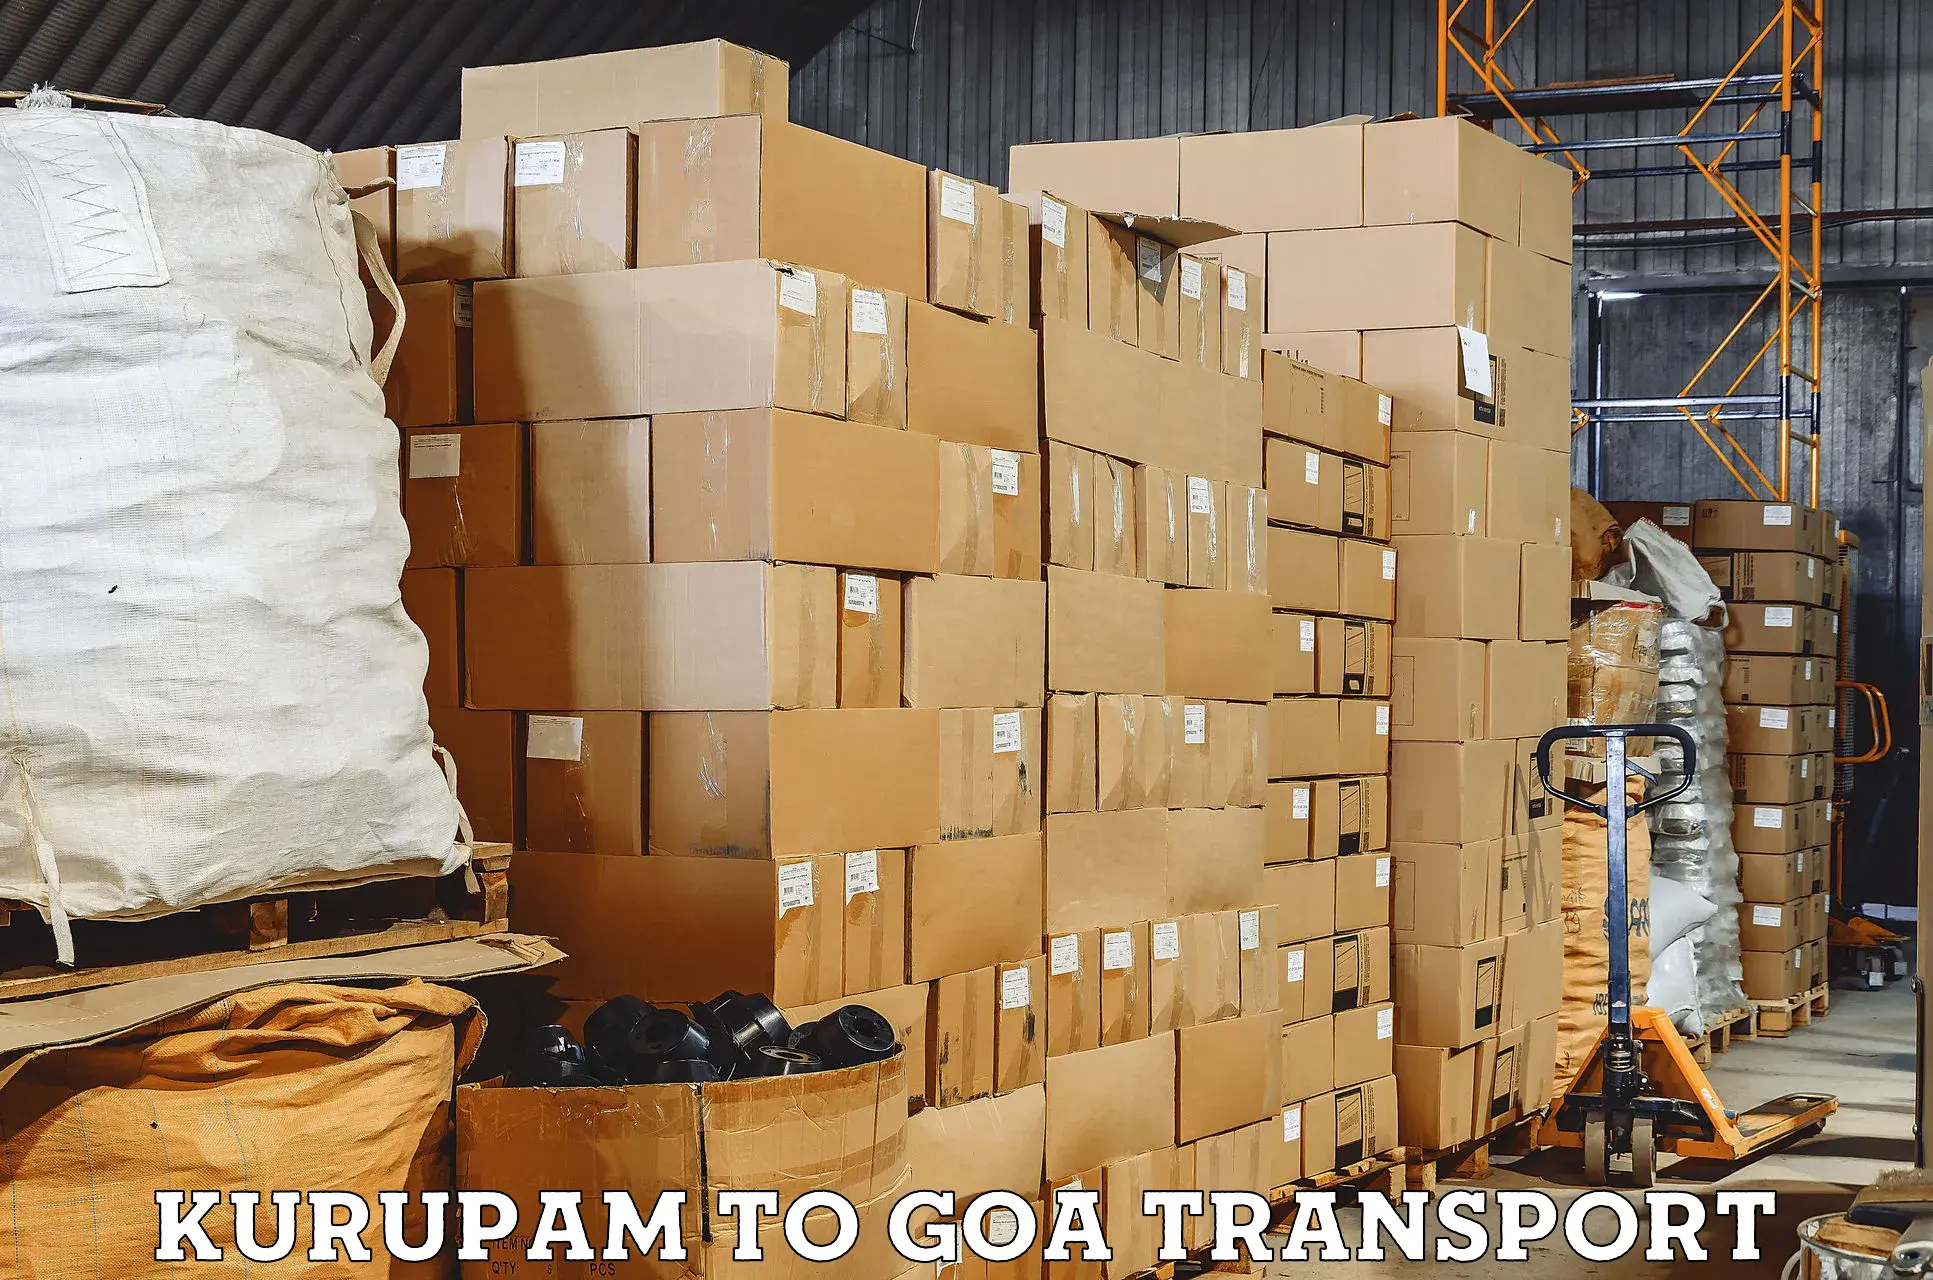 Container transport service Kurupam to Vasco da Gama